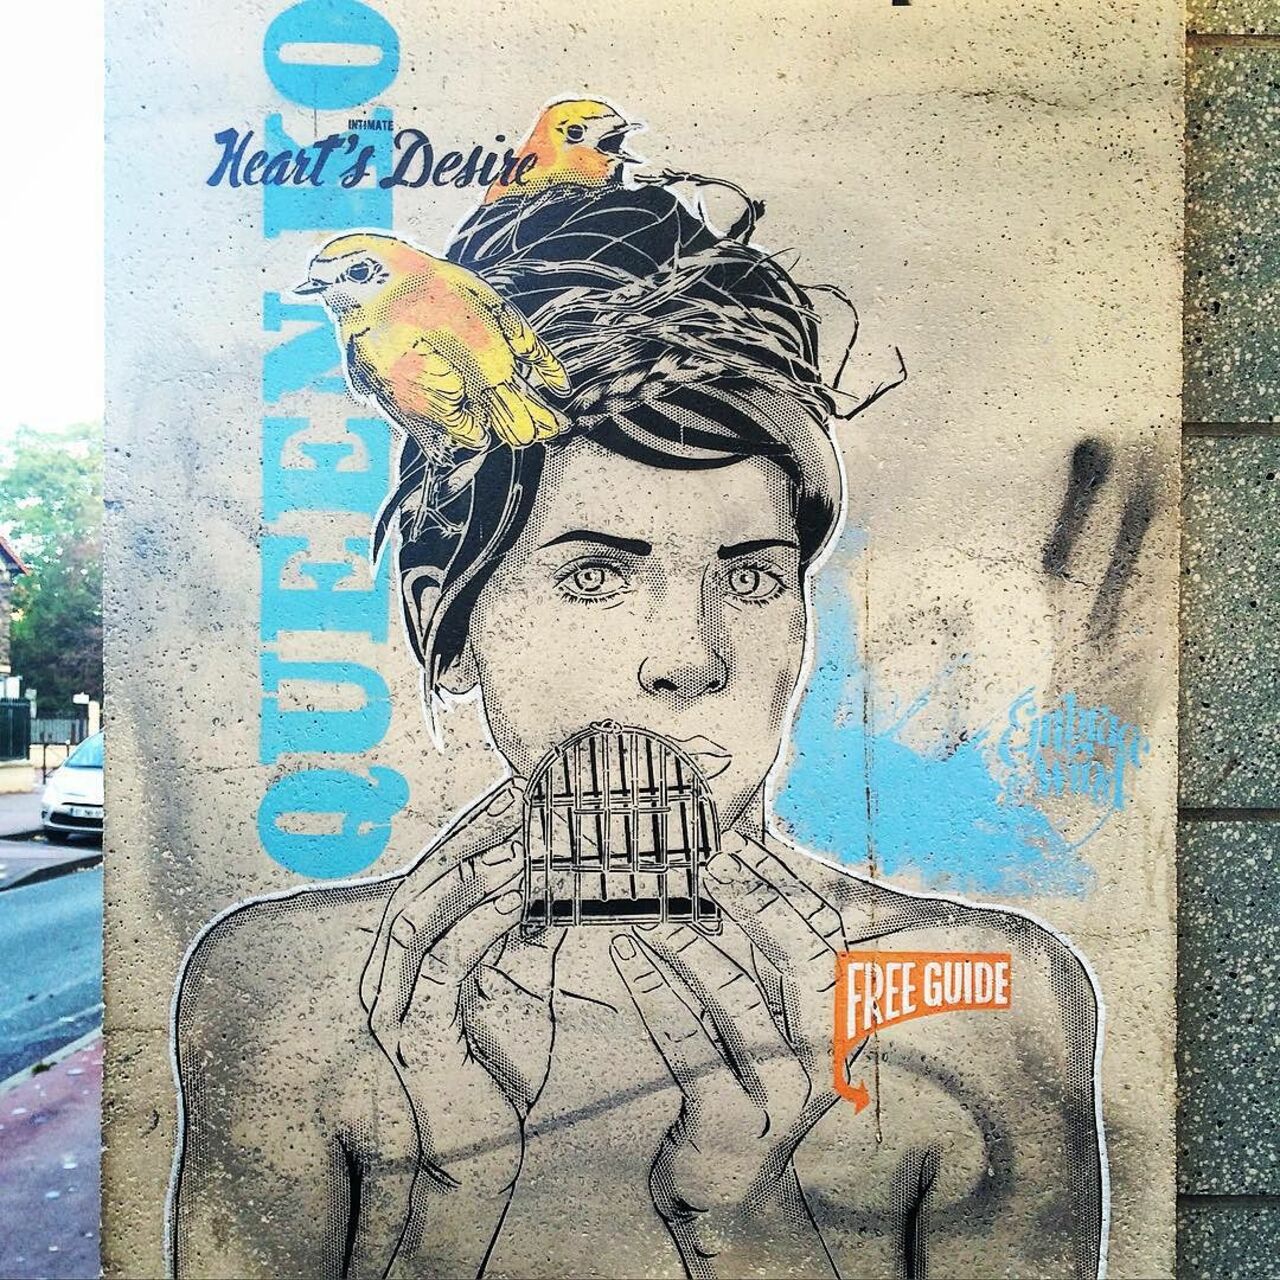 #Paris #graffiti photo by @julosteart http://ift.tt/1OPLZAk #StreetArt https://t.co/NV15nFEzUP